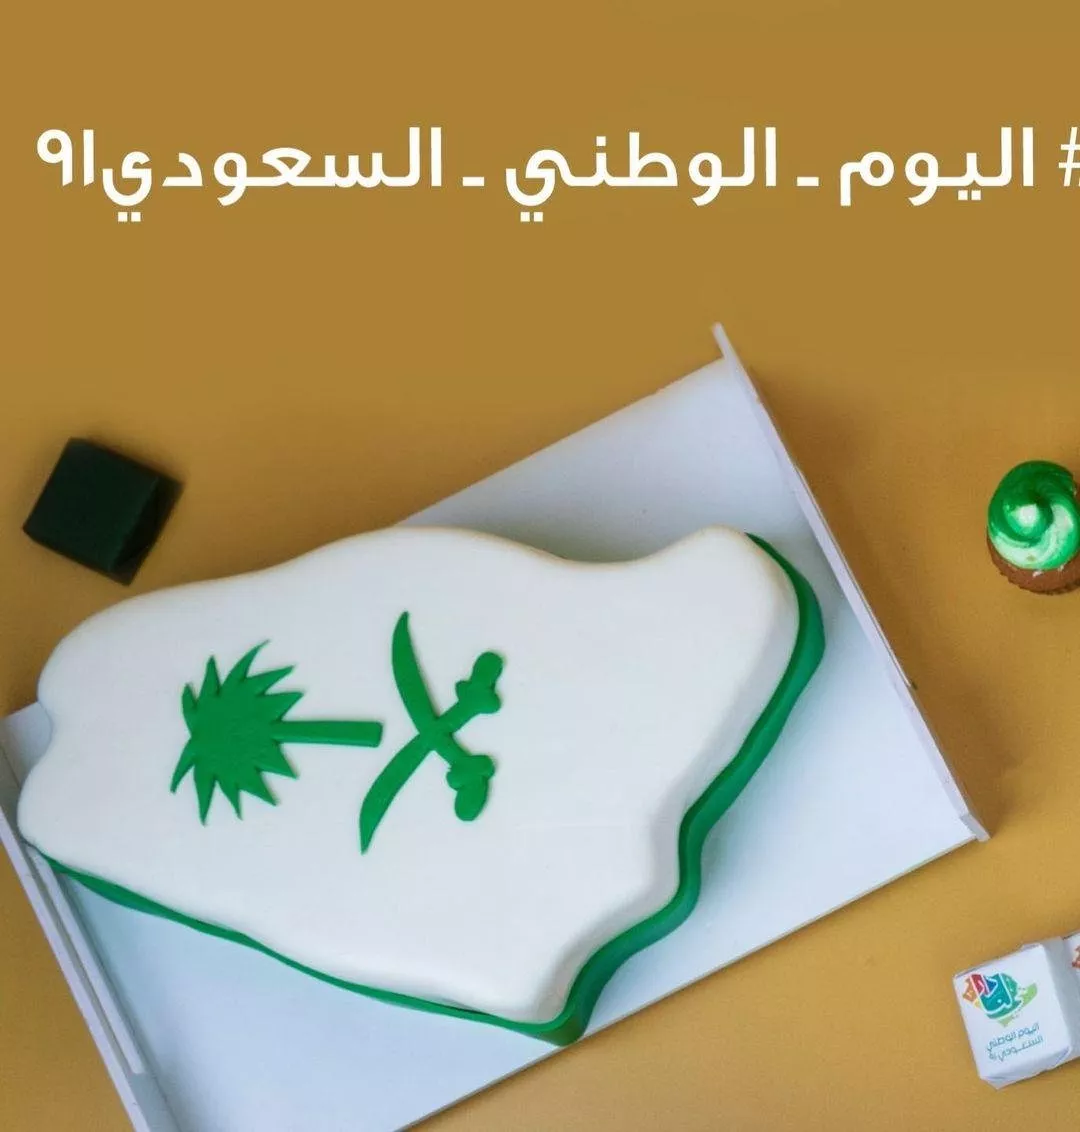 صور أفكار كيكات اليوم الوطني السعودي 91، لتستوحي منها